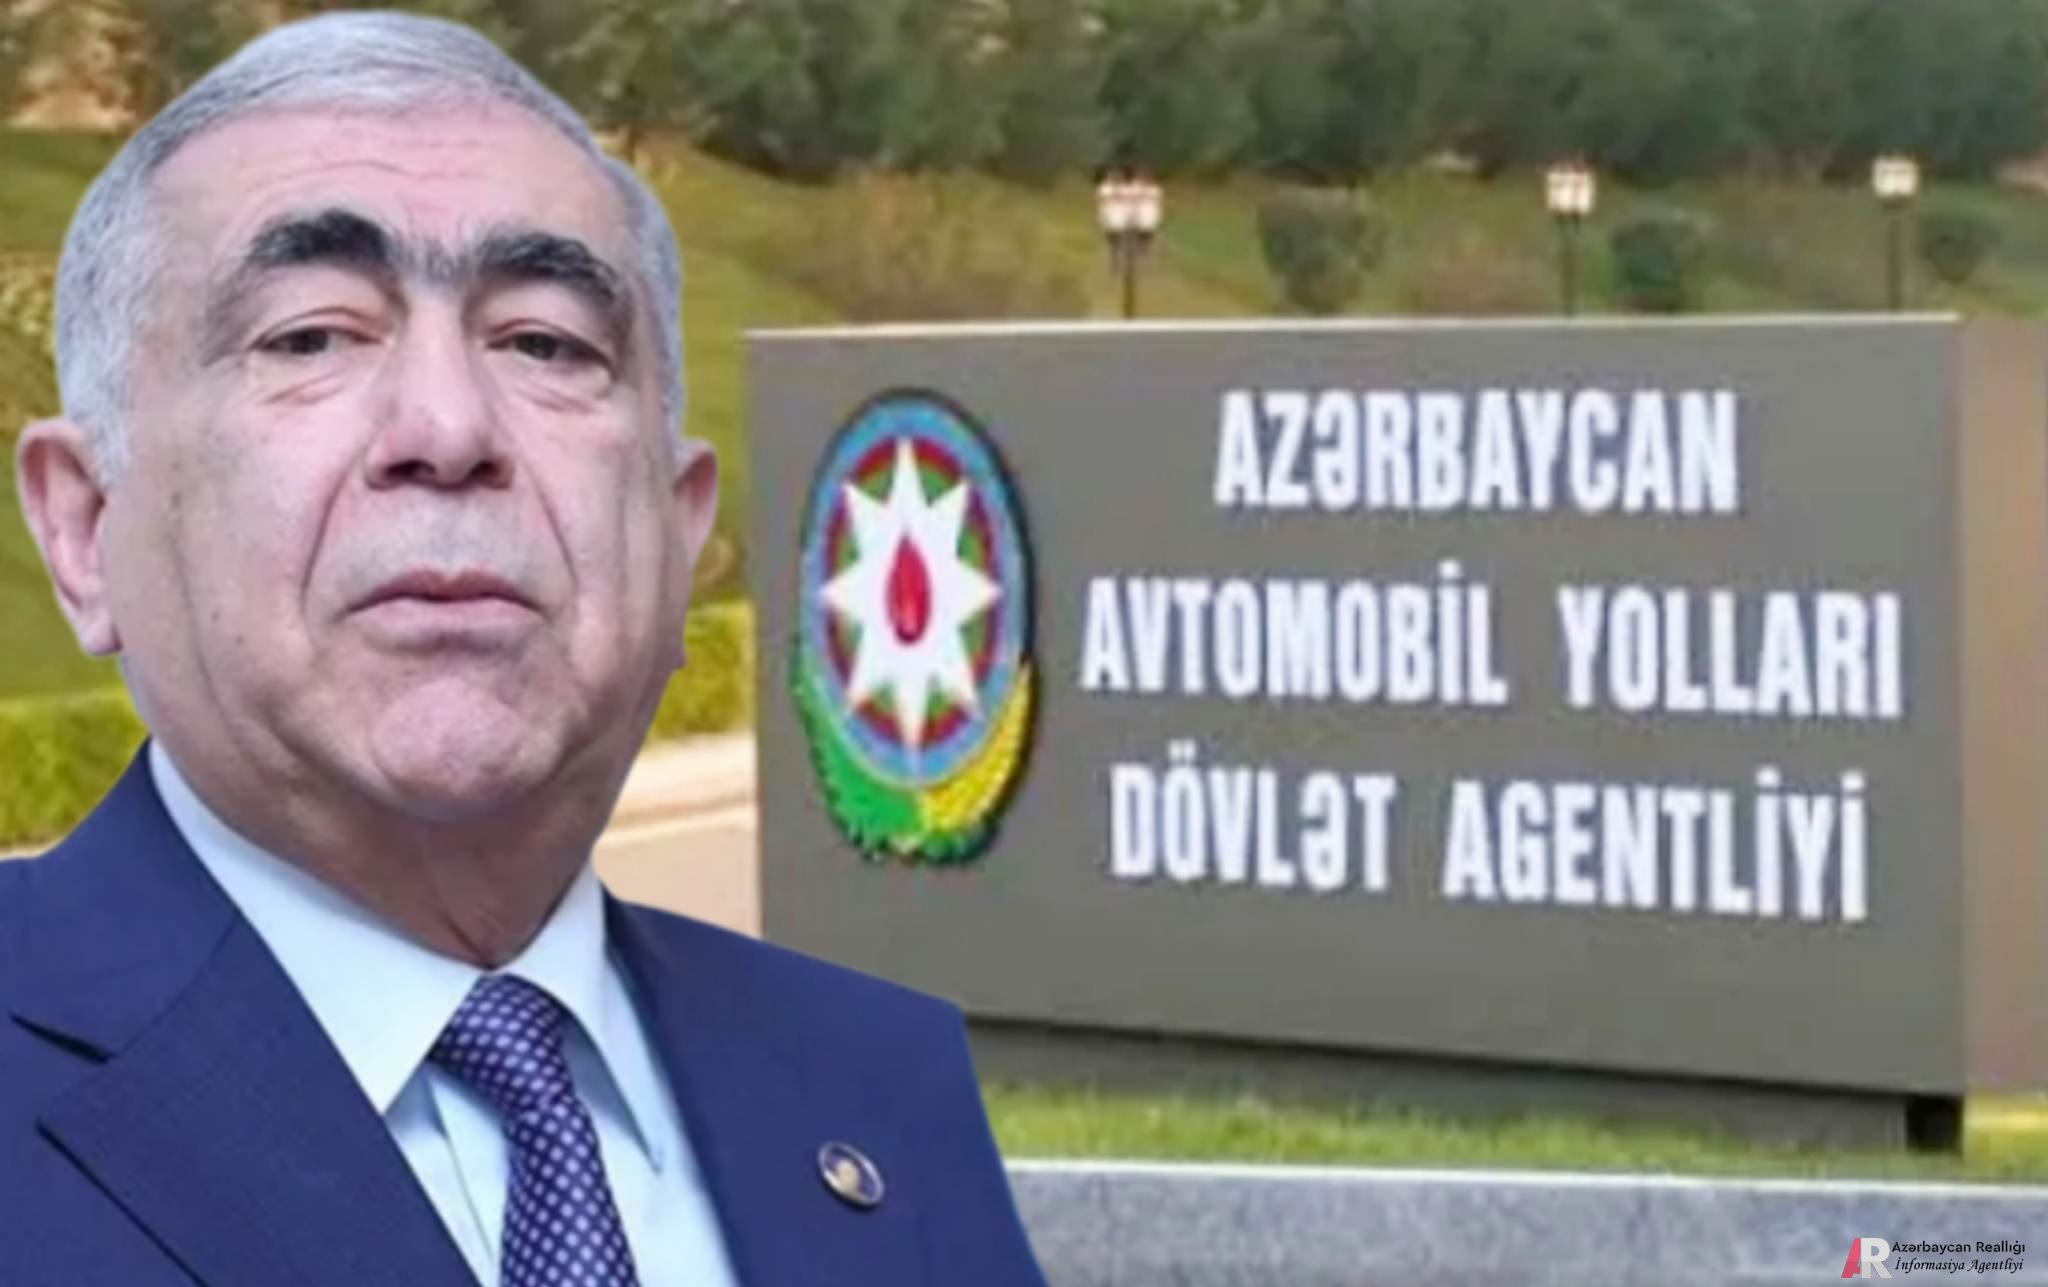 Azərbaycan Avtomobil Yolları Dövlət Agentliyində kök salmış Qasımovlar klanı - TƏFƏRRÜAT